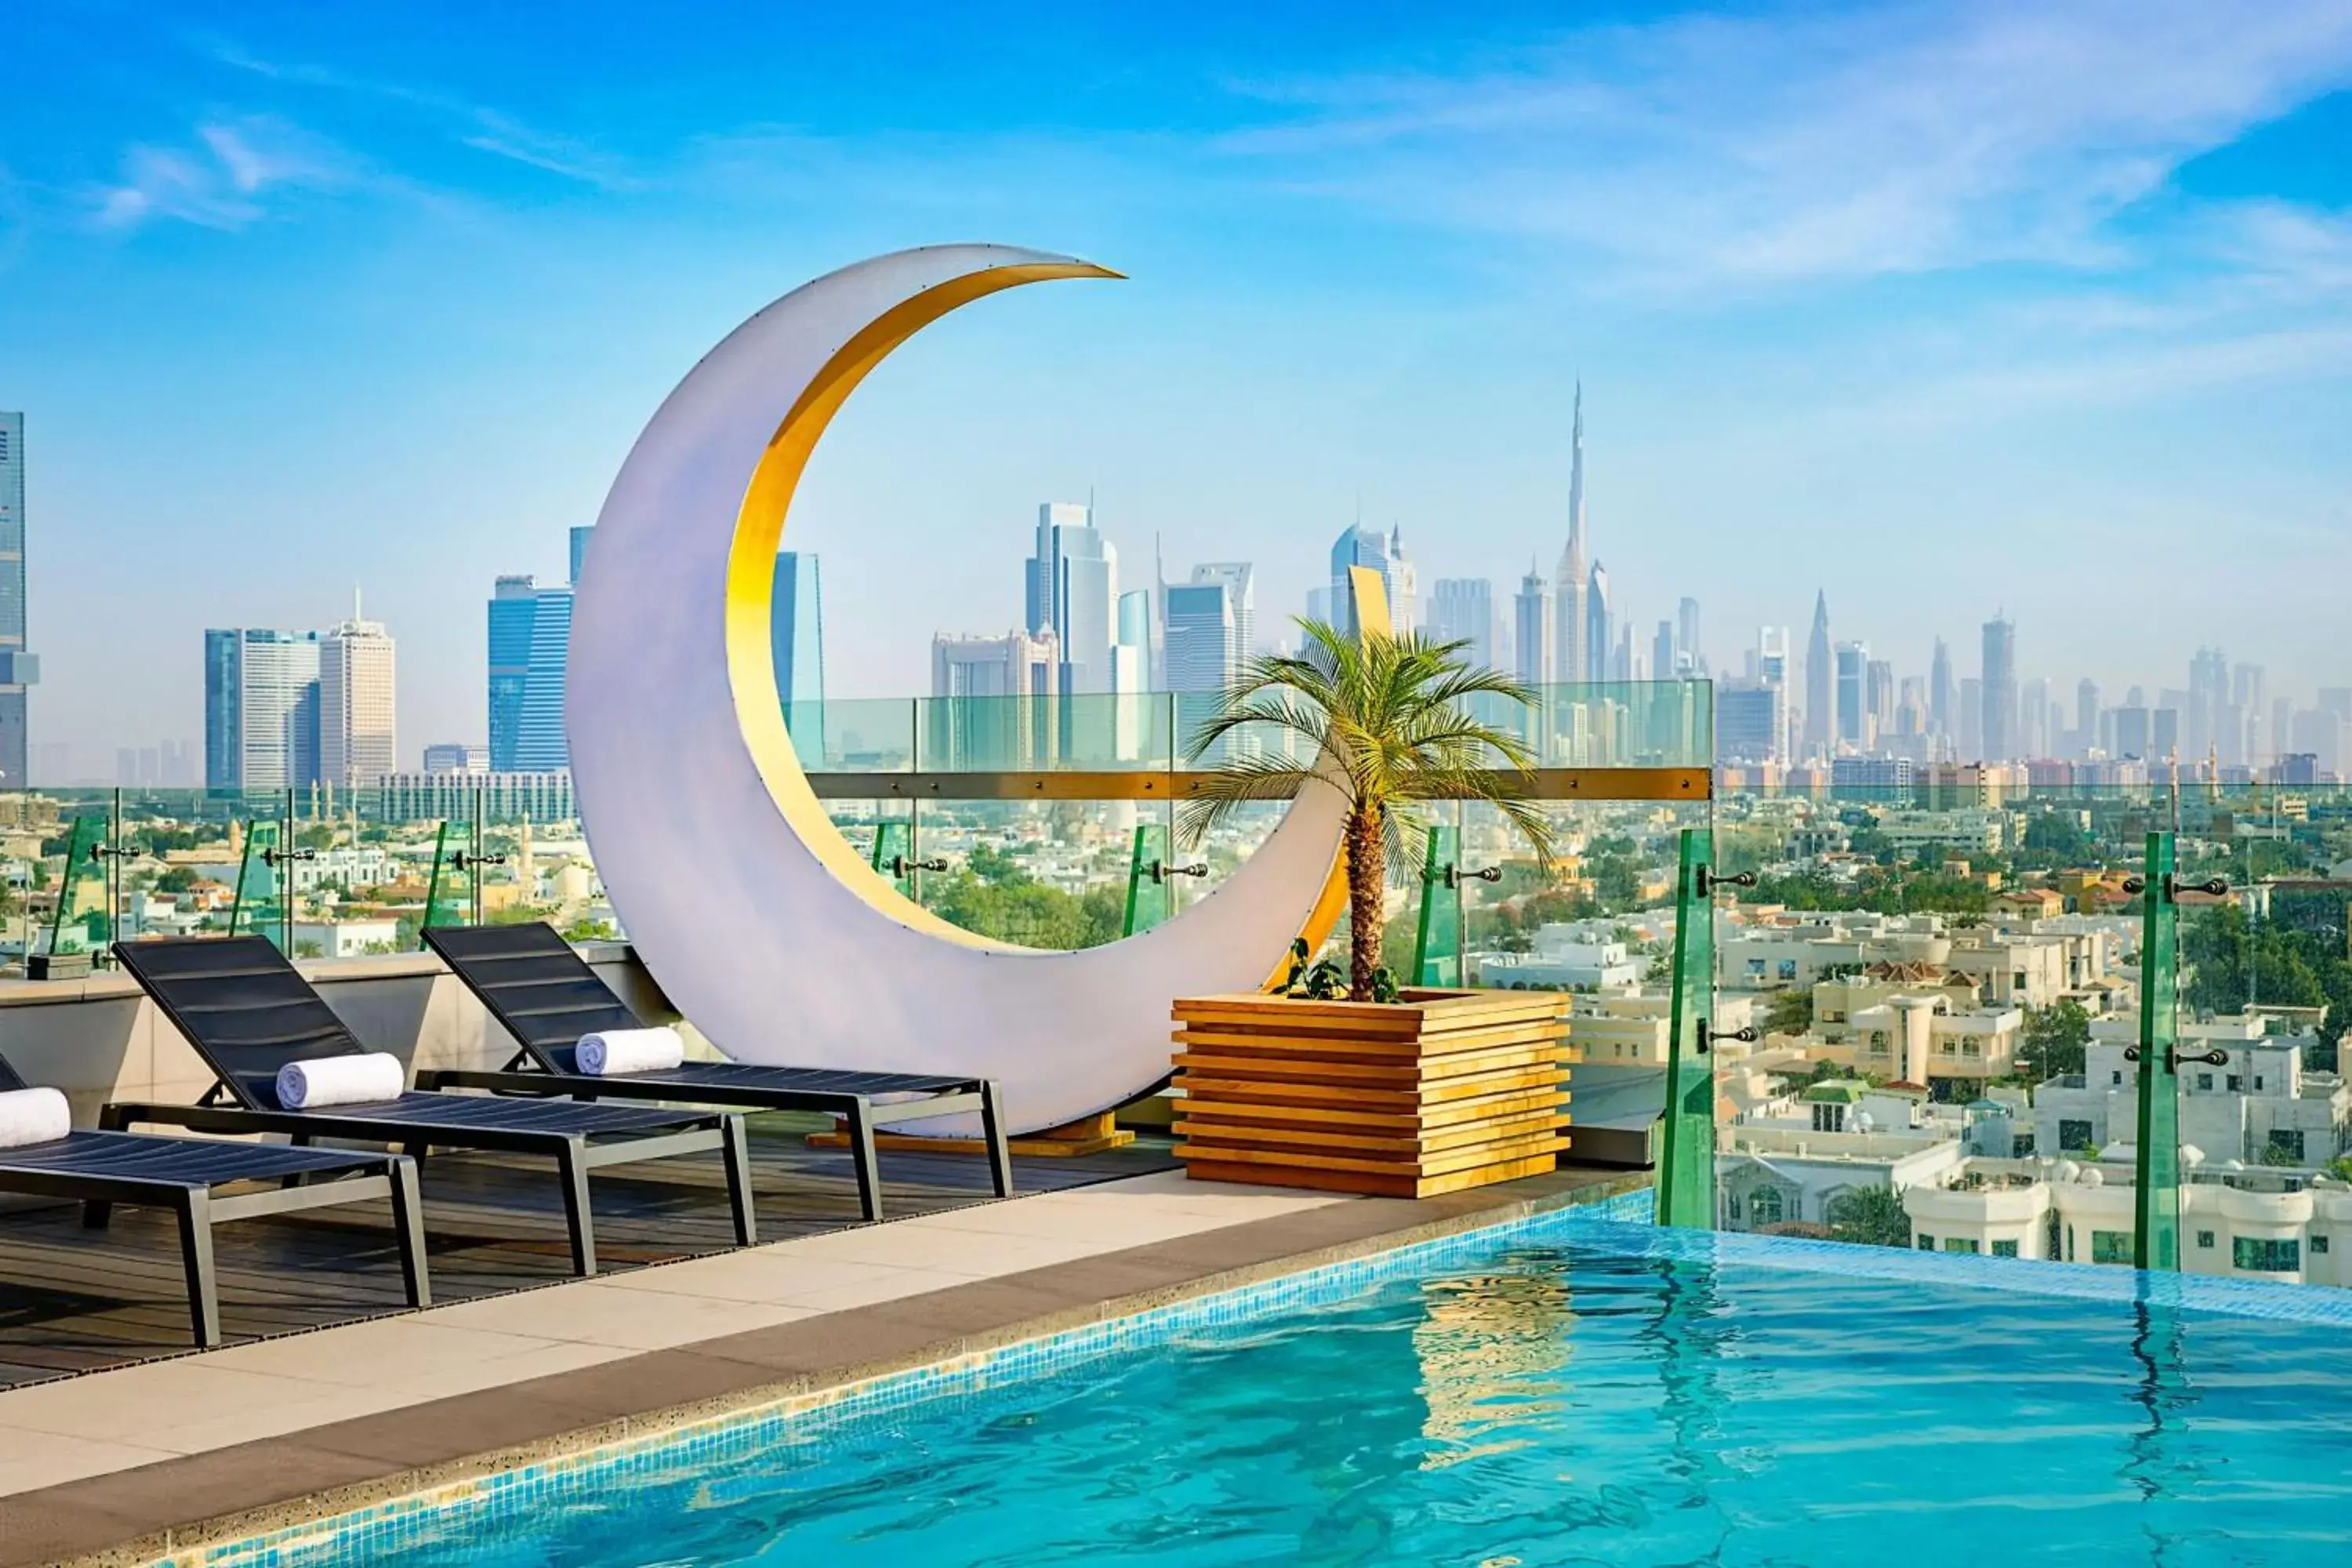 Area and facilities, Swimming Pool in Aloft Al Mina, Dubai